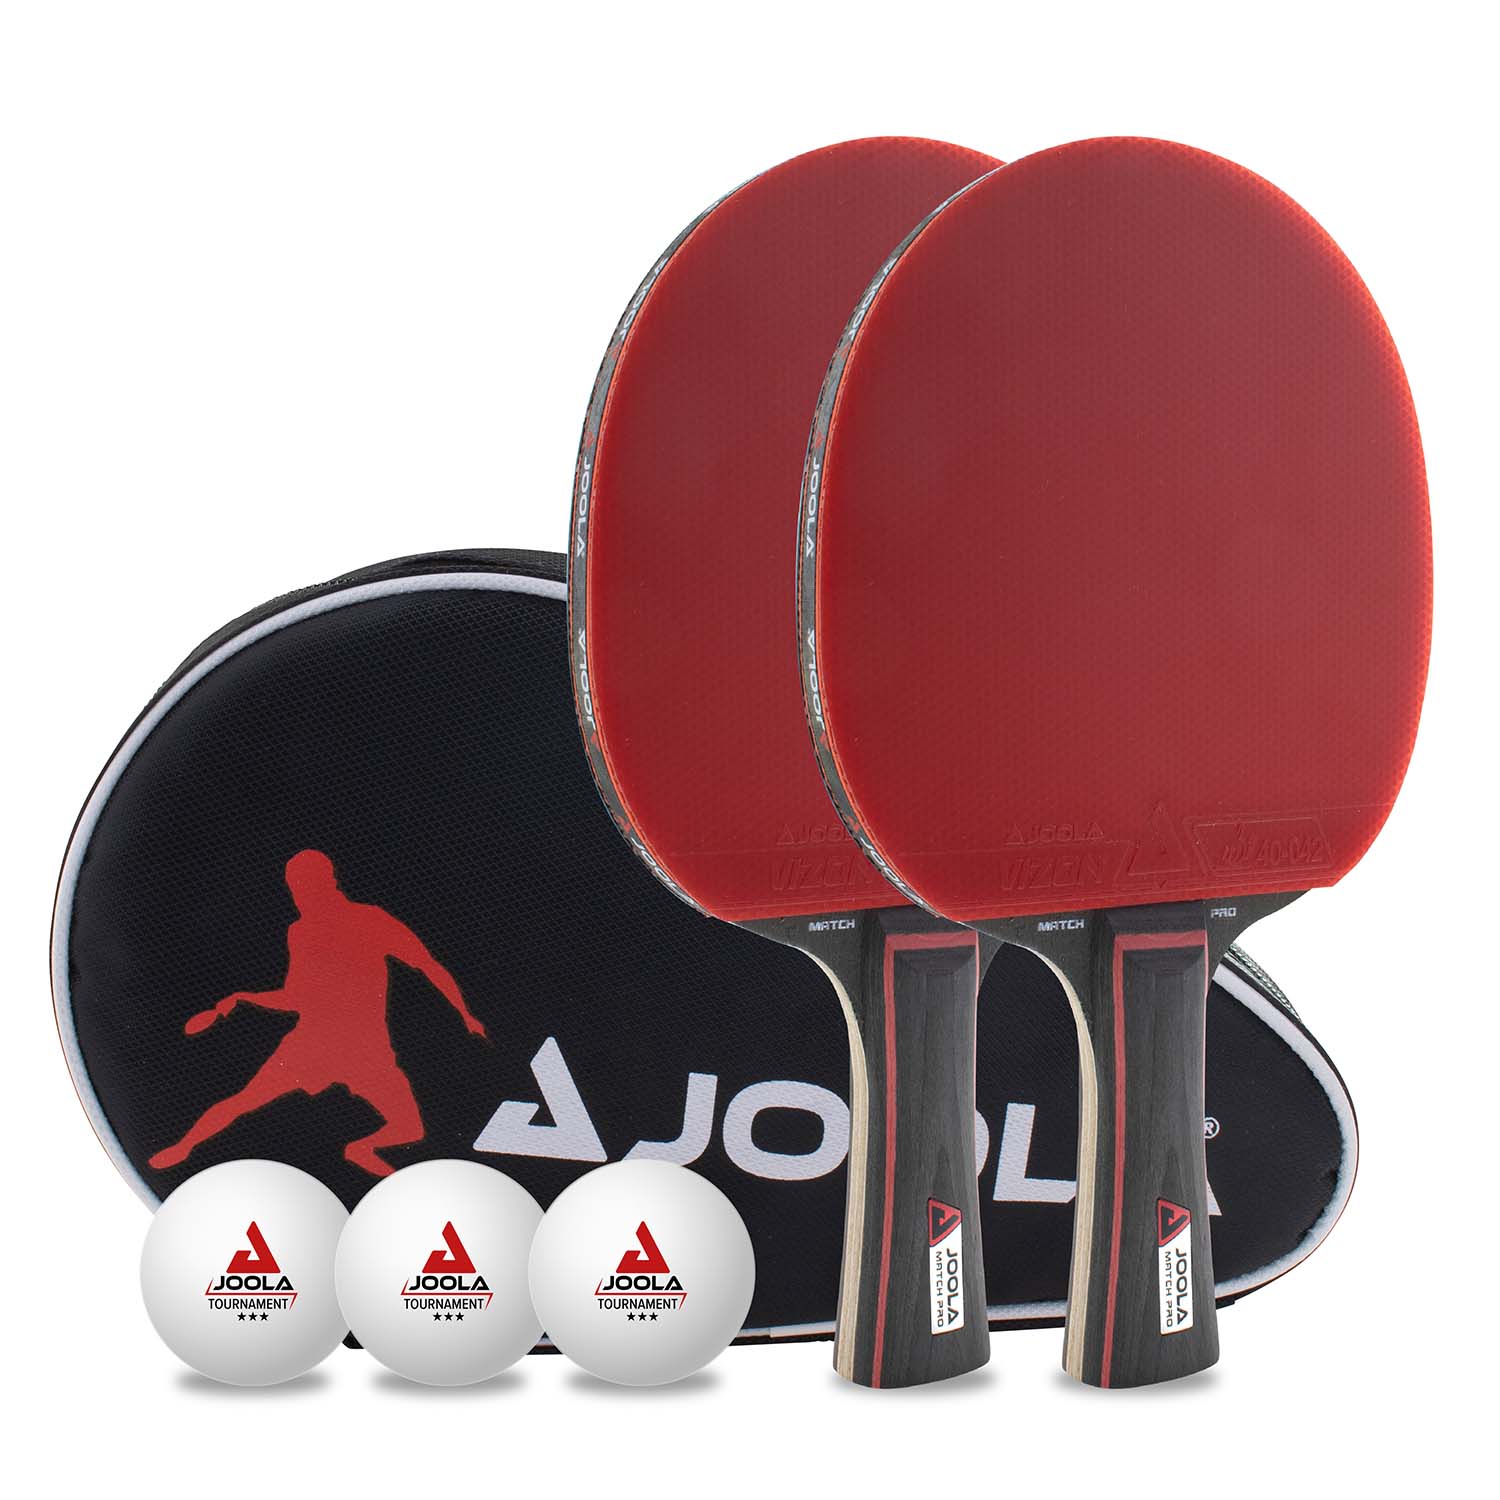 Tischtennis | PRO DUO JOOLA JOOLA GmbH Tischtennis-Set